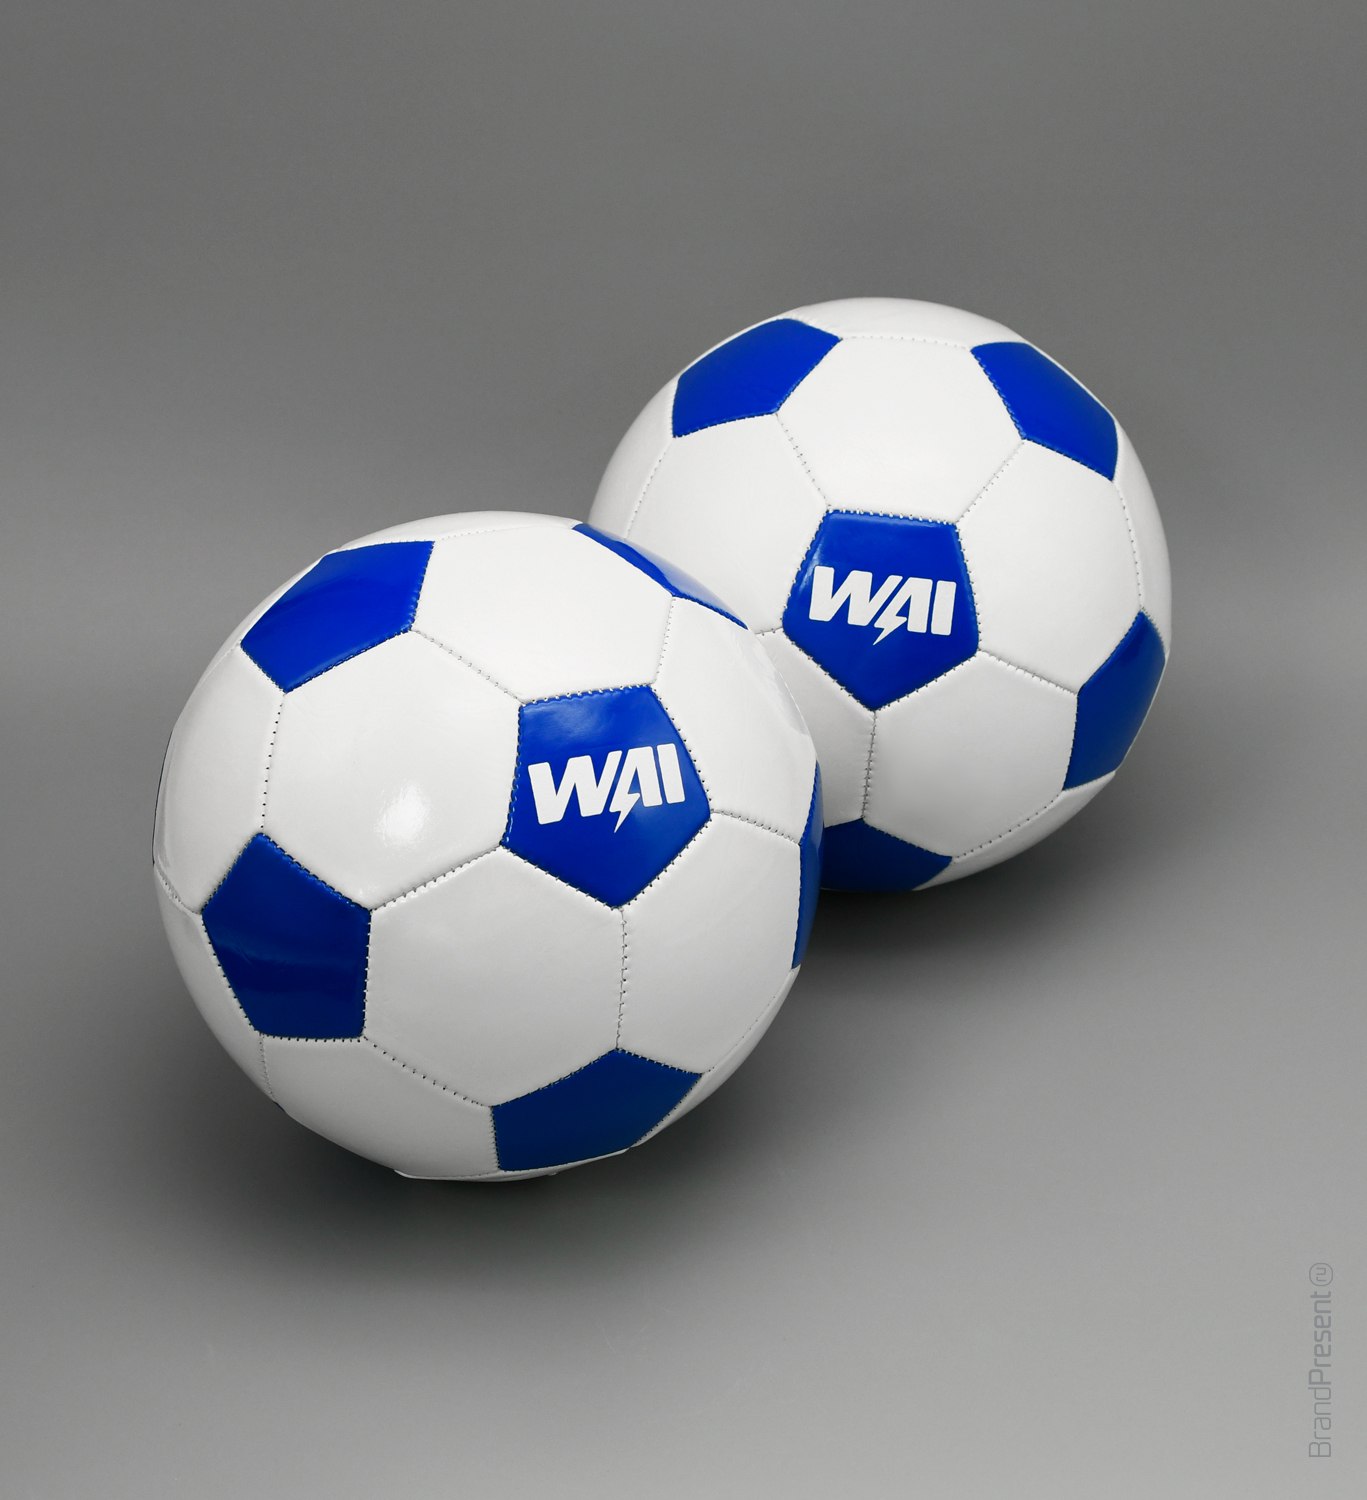 Мячи и шейкеры для WAI (Фотография 3)